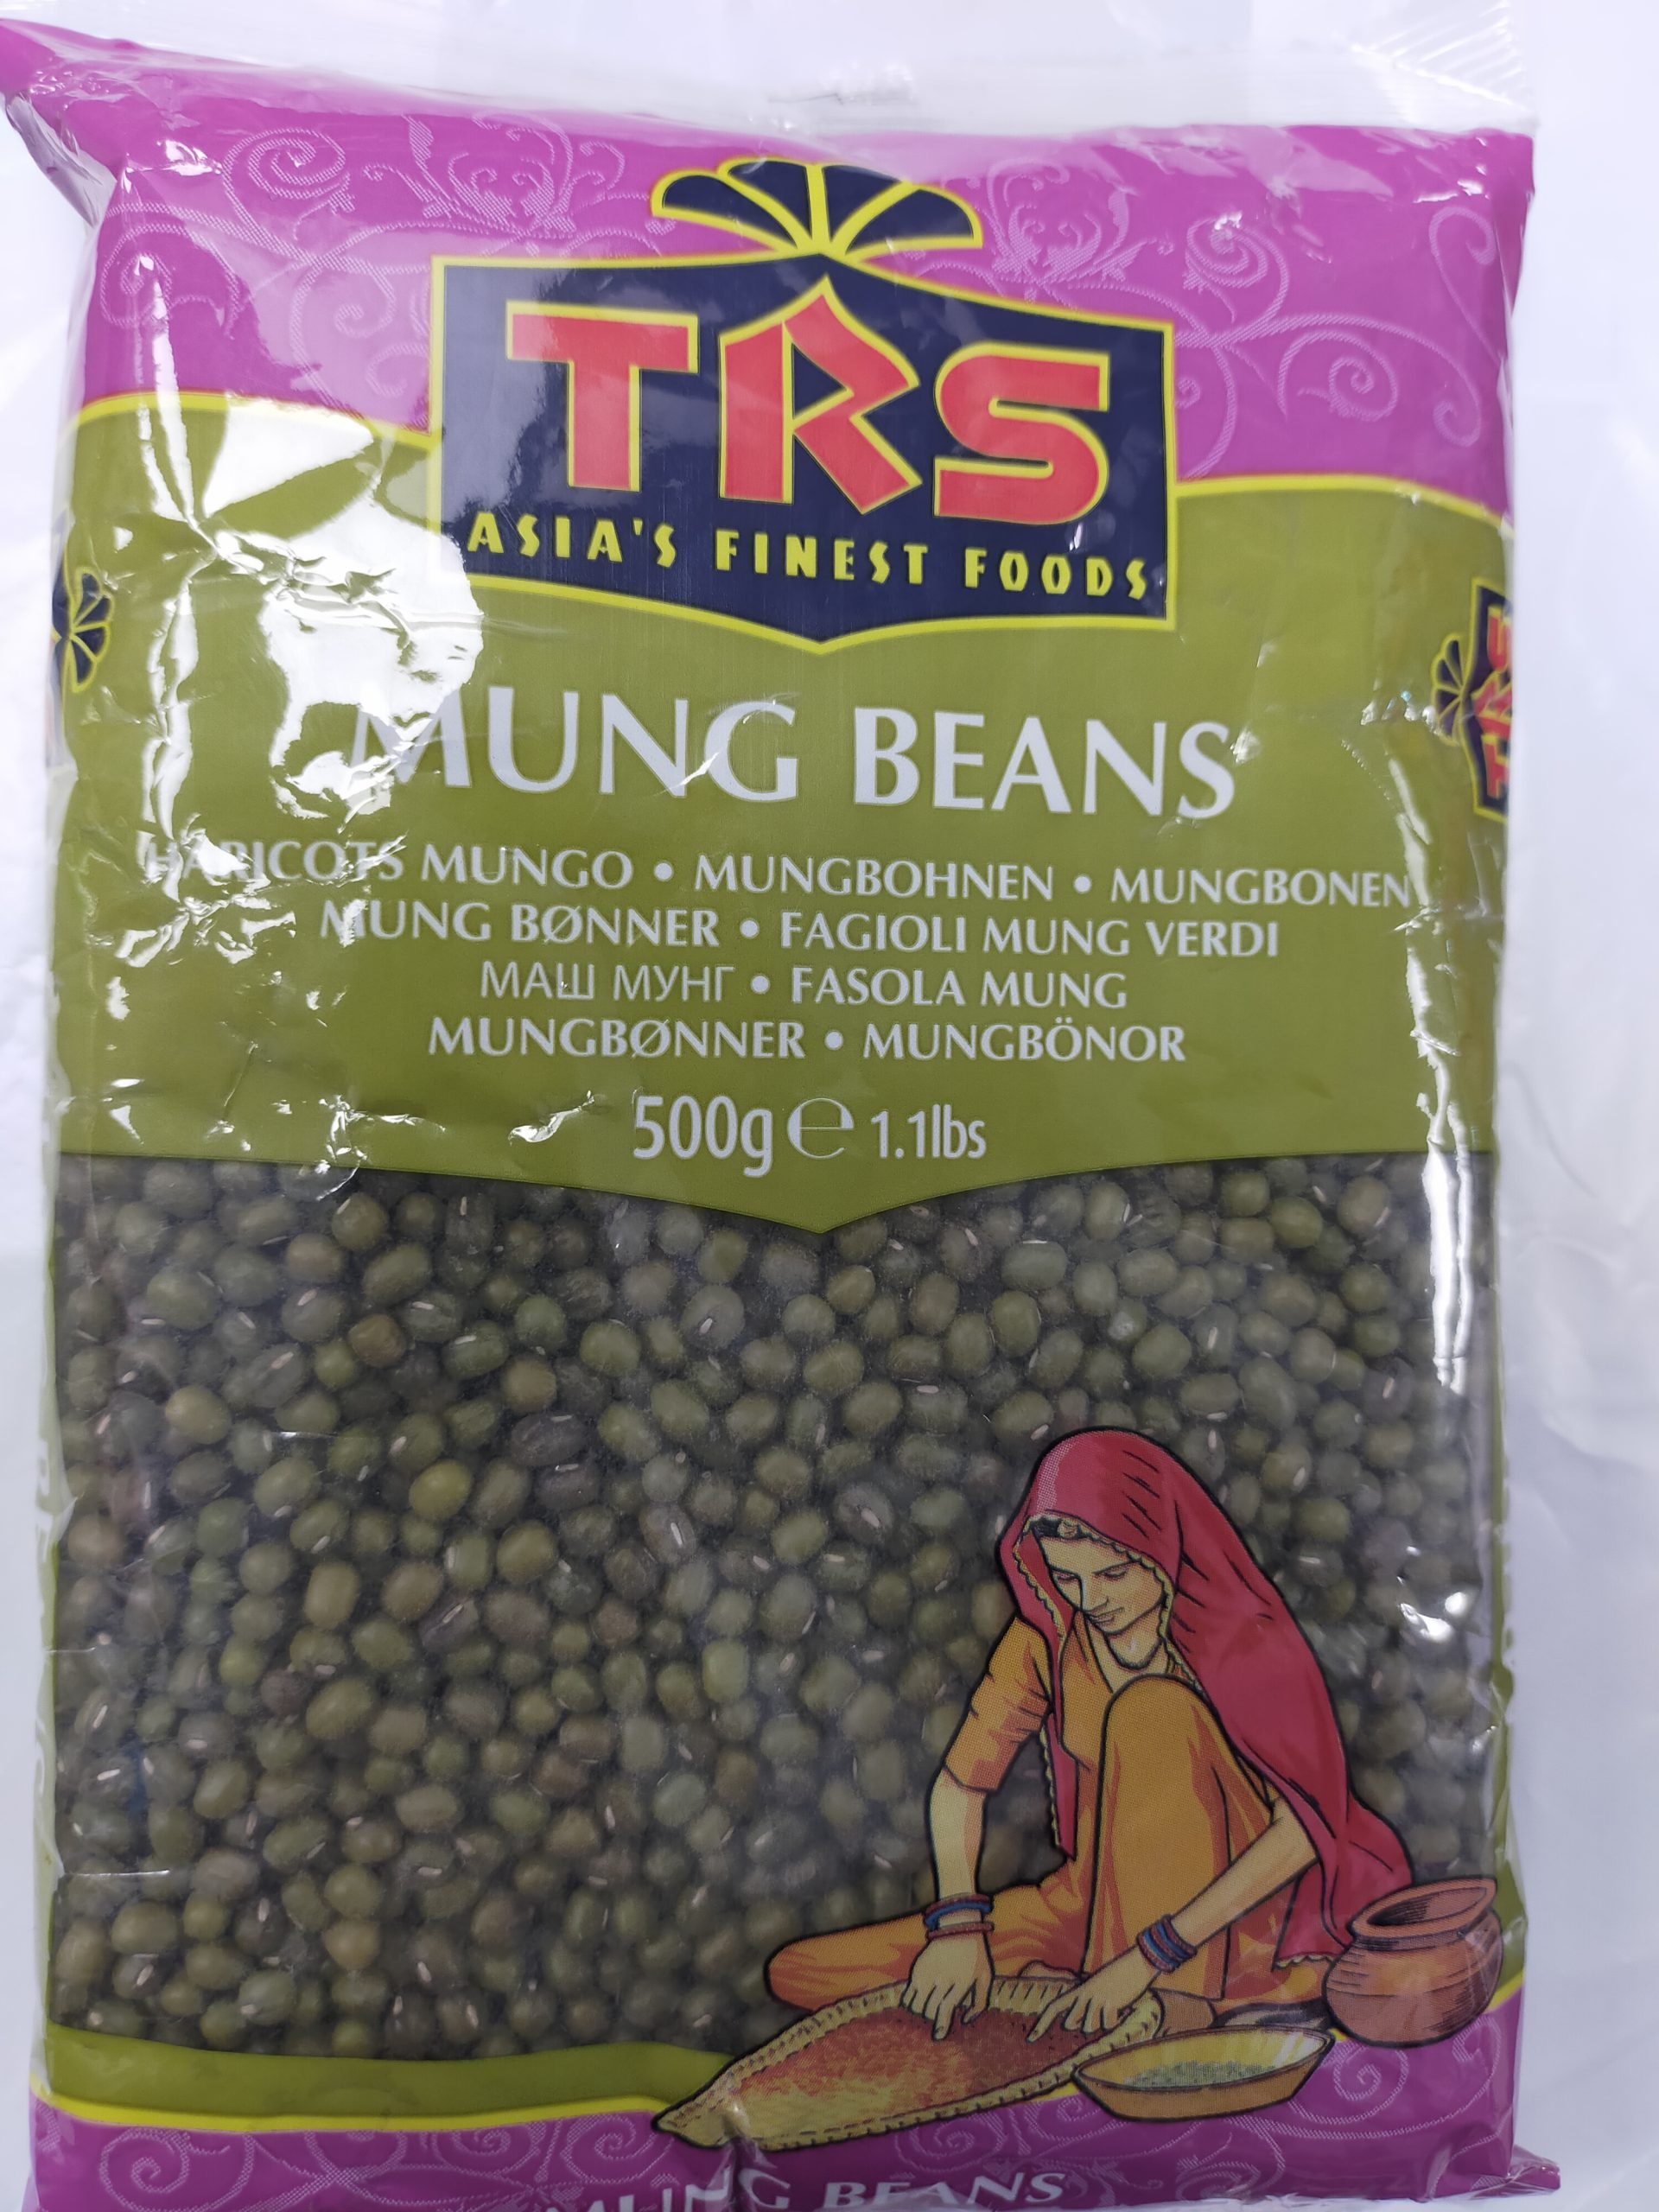 TRS Mung Beans 500g